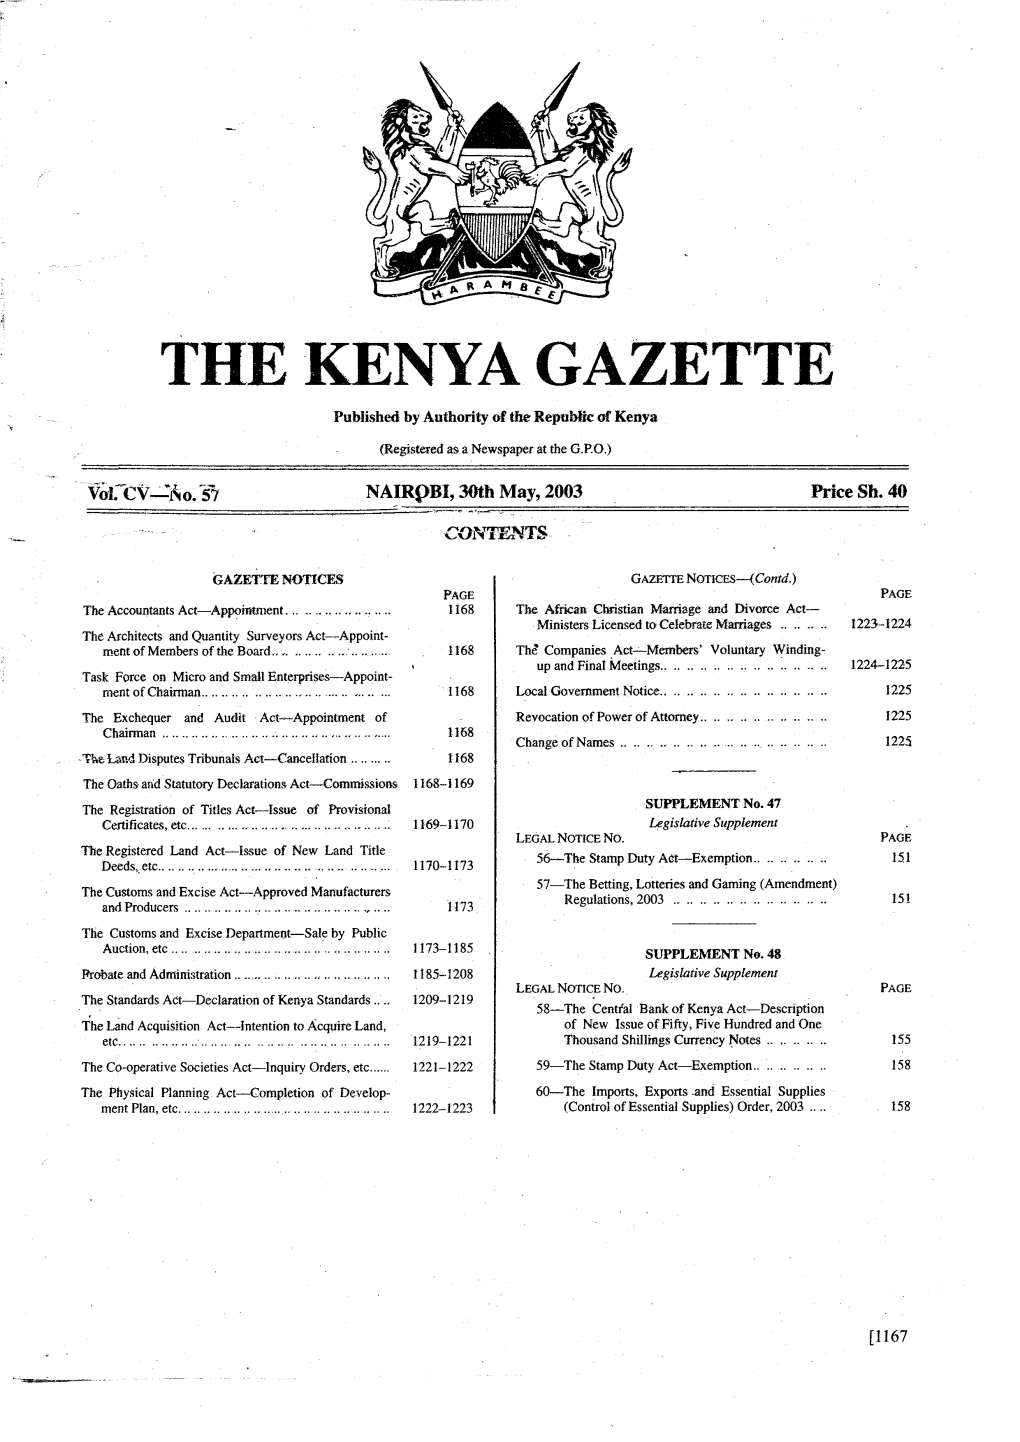 *He Kenya Gazette